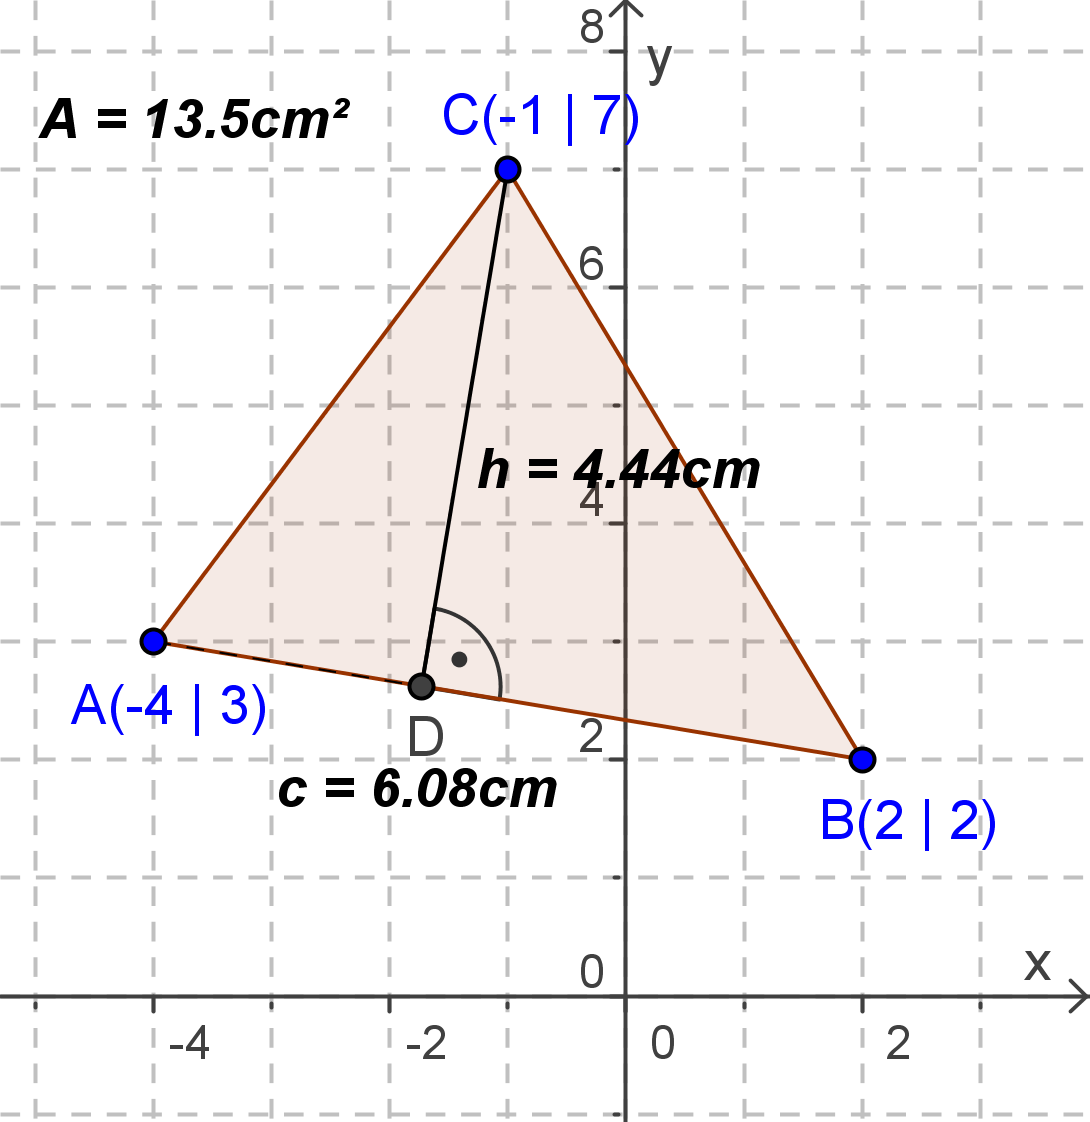 Höhe im Dreieck und Flächeninhaltsberechnung Beispiel: Gegeben ist das Dreieck ABC mit A(-4 3), B(2 2) und C(-1 7). Zeichnen Sie die Höhe h [AB] ein und berechnen Sie den Flächeninhalt des Dreiecks.